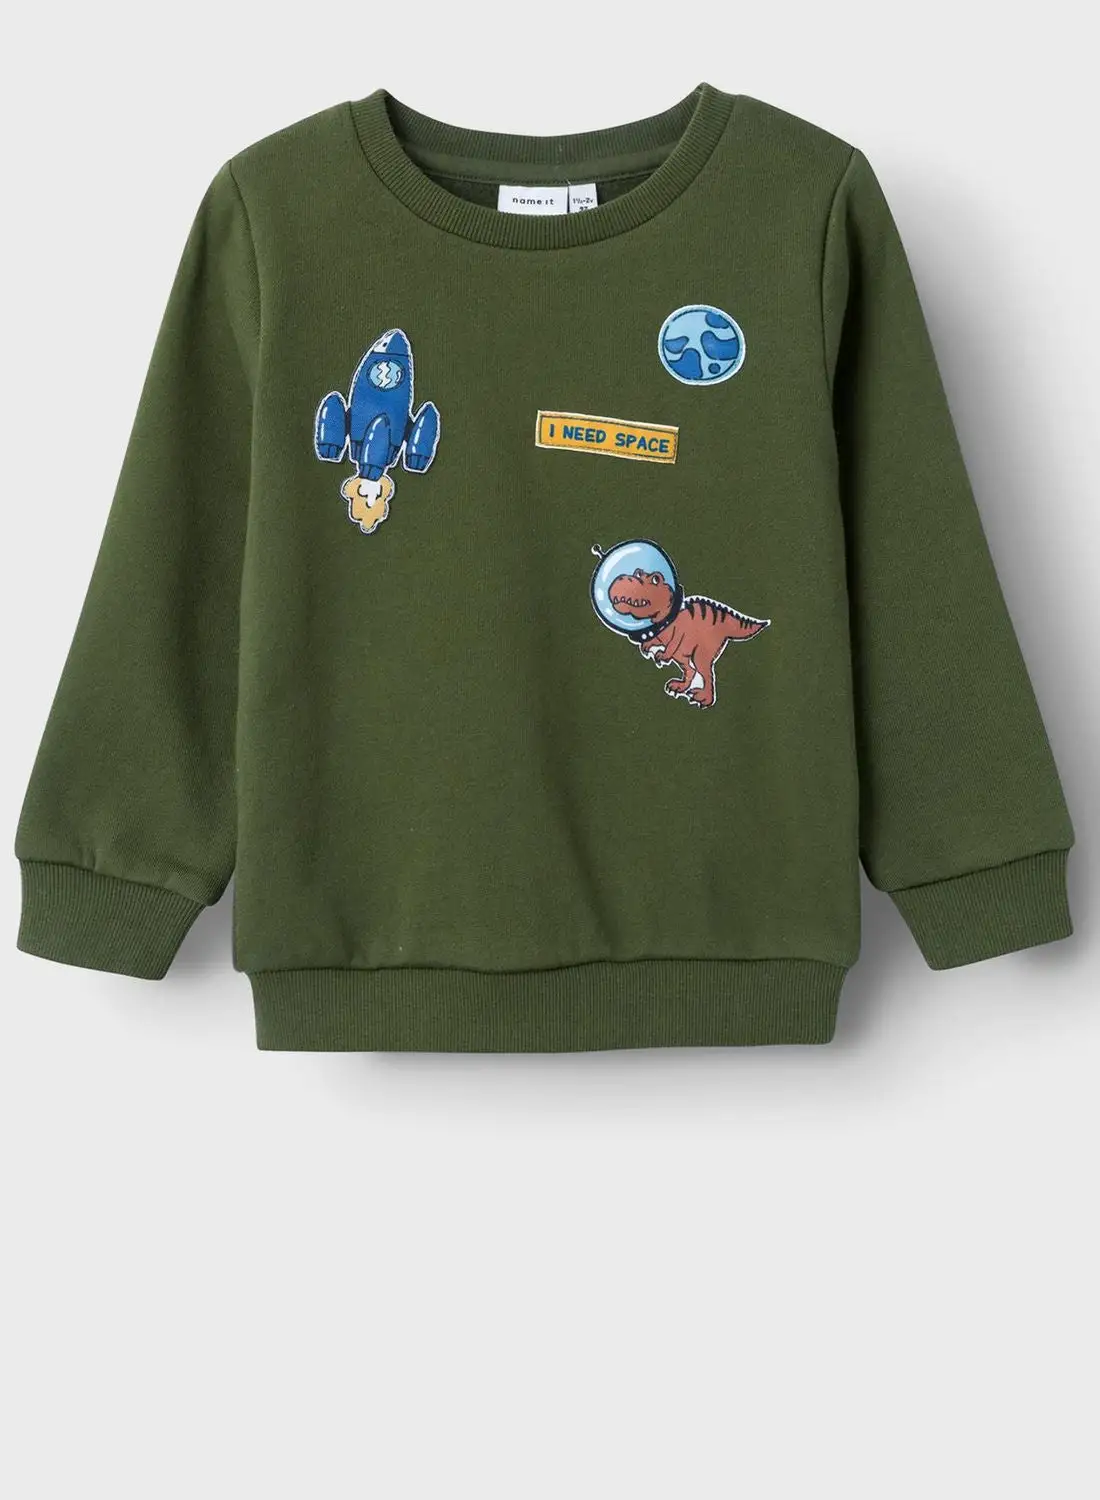 NAME IT Kids Space Print Sweatshirt